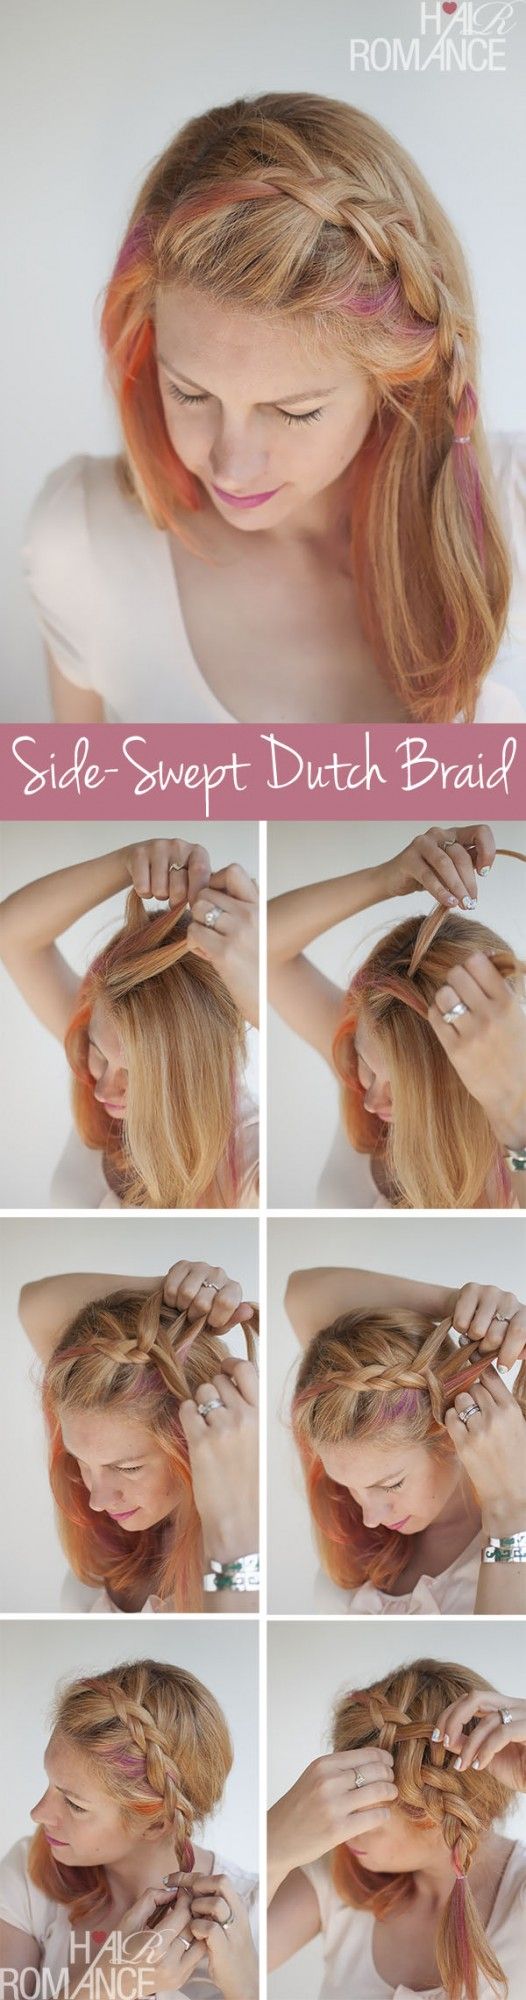 Side-swept Dutch Braid